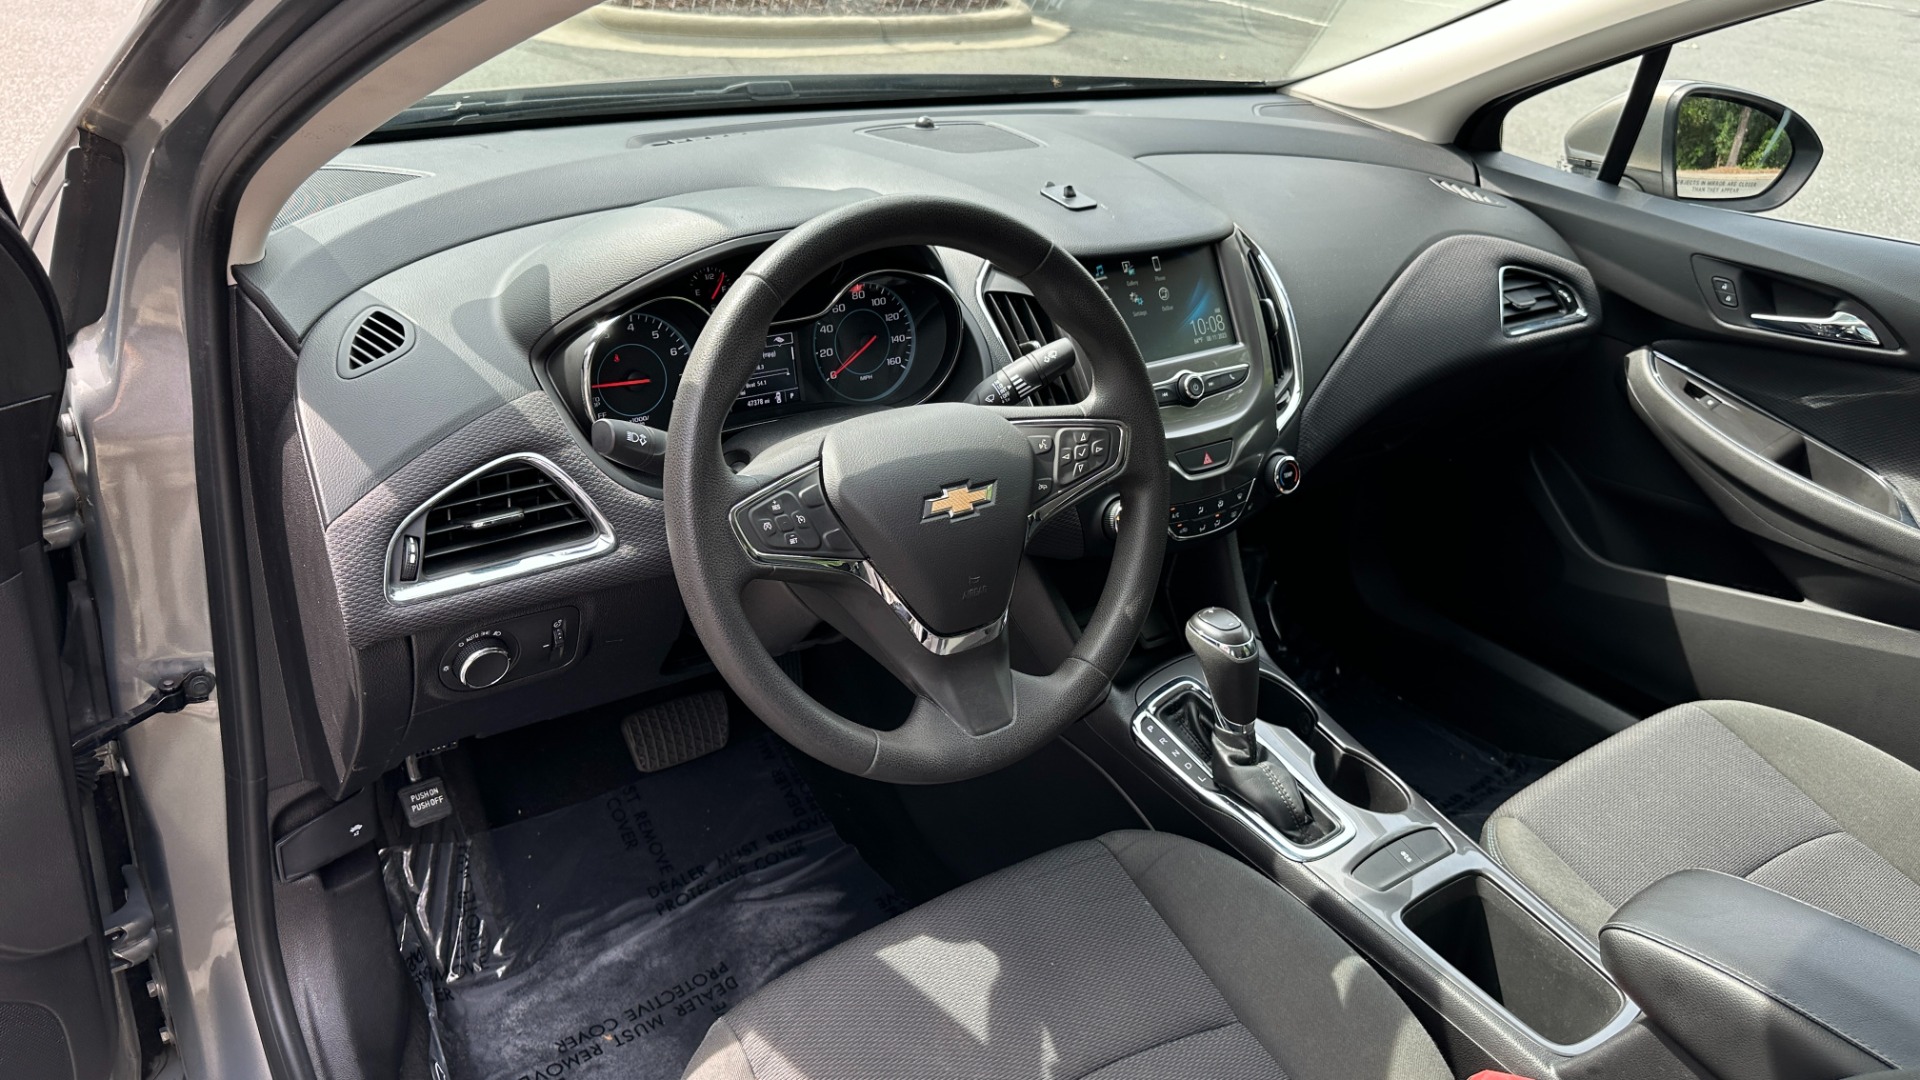 Chevrolet Cruze Interior 2017 - Explore 10+ Videos & 90+ Images